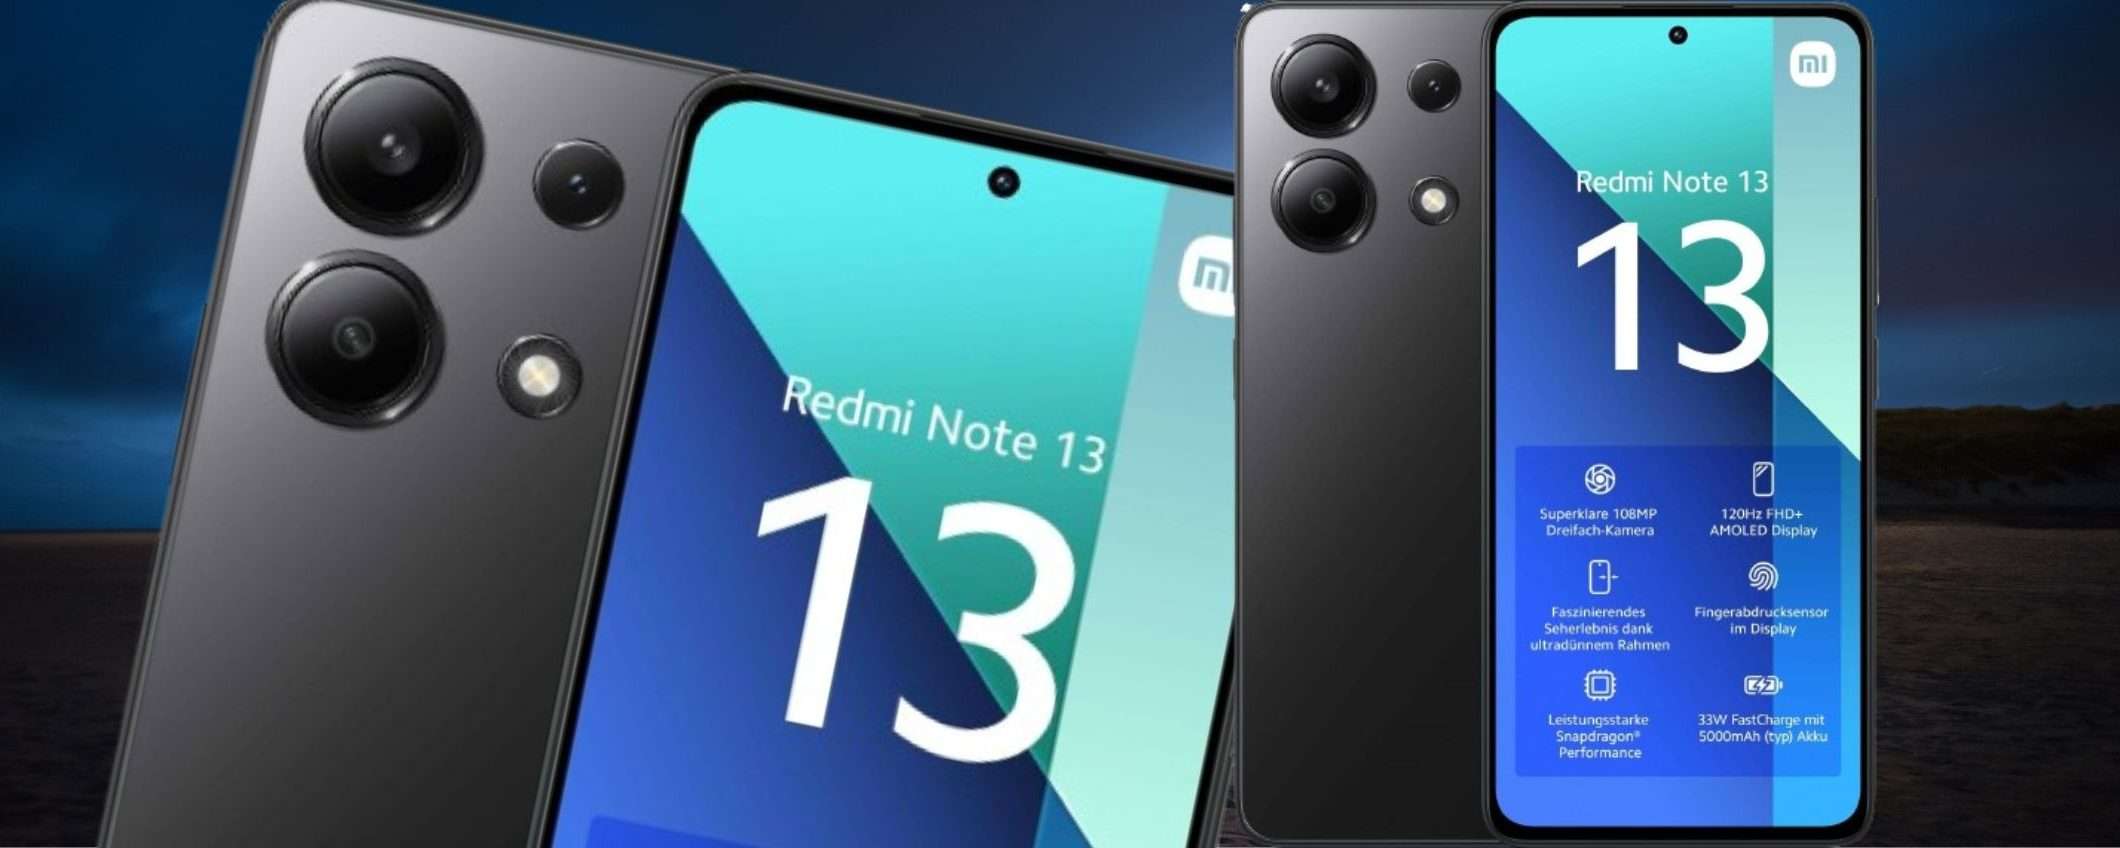 Xiaomi Redmi Note 13 a 149€ è PURA MAGIA: 108MP, 6/128GB e AMOLED 120Hz